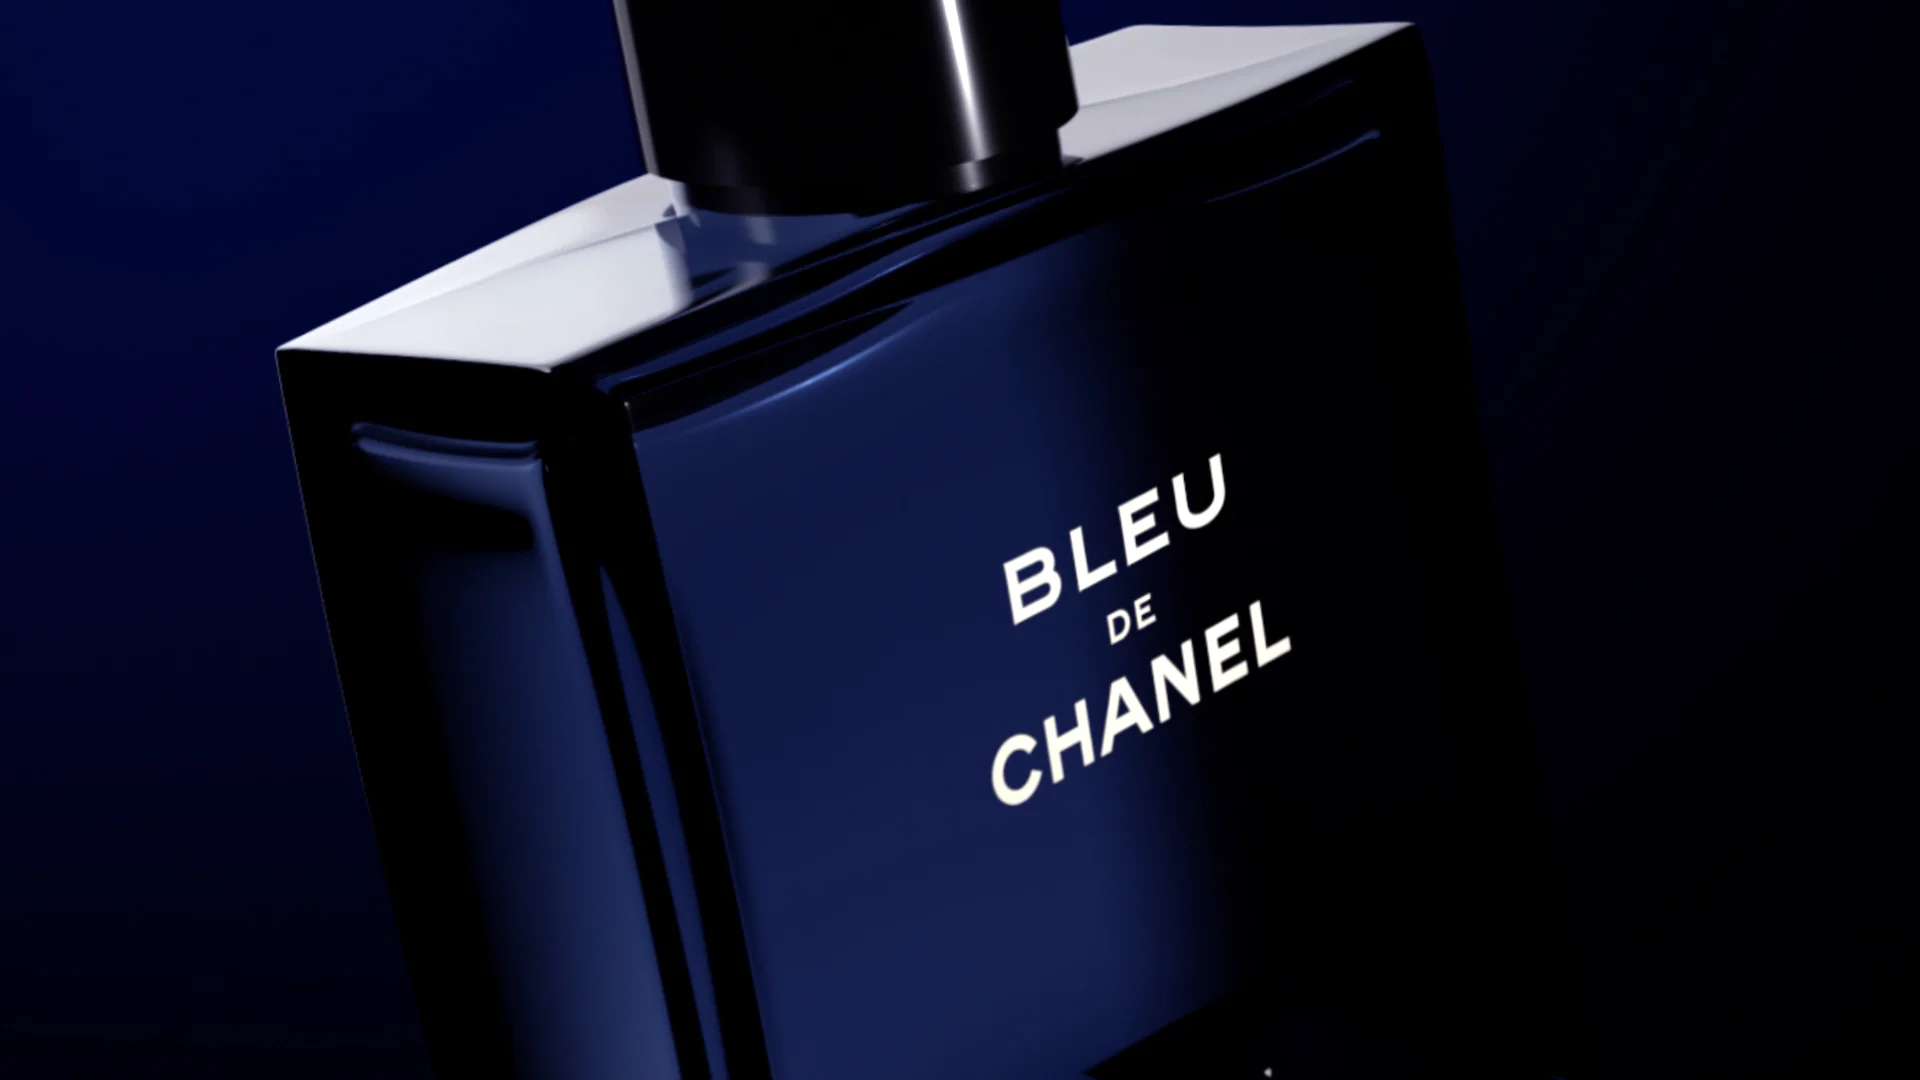 Louis Vuitton mens fragrance on Vimeo